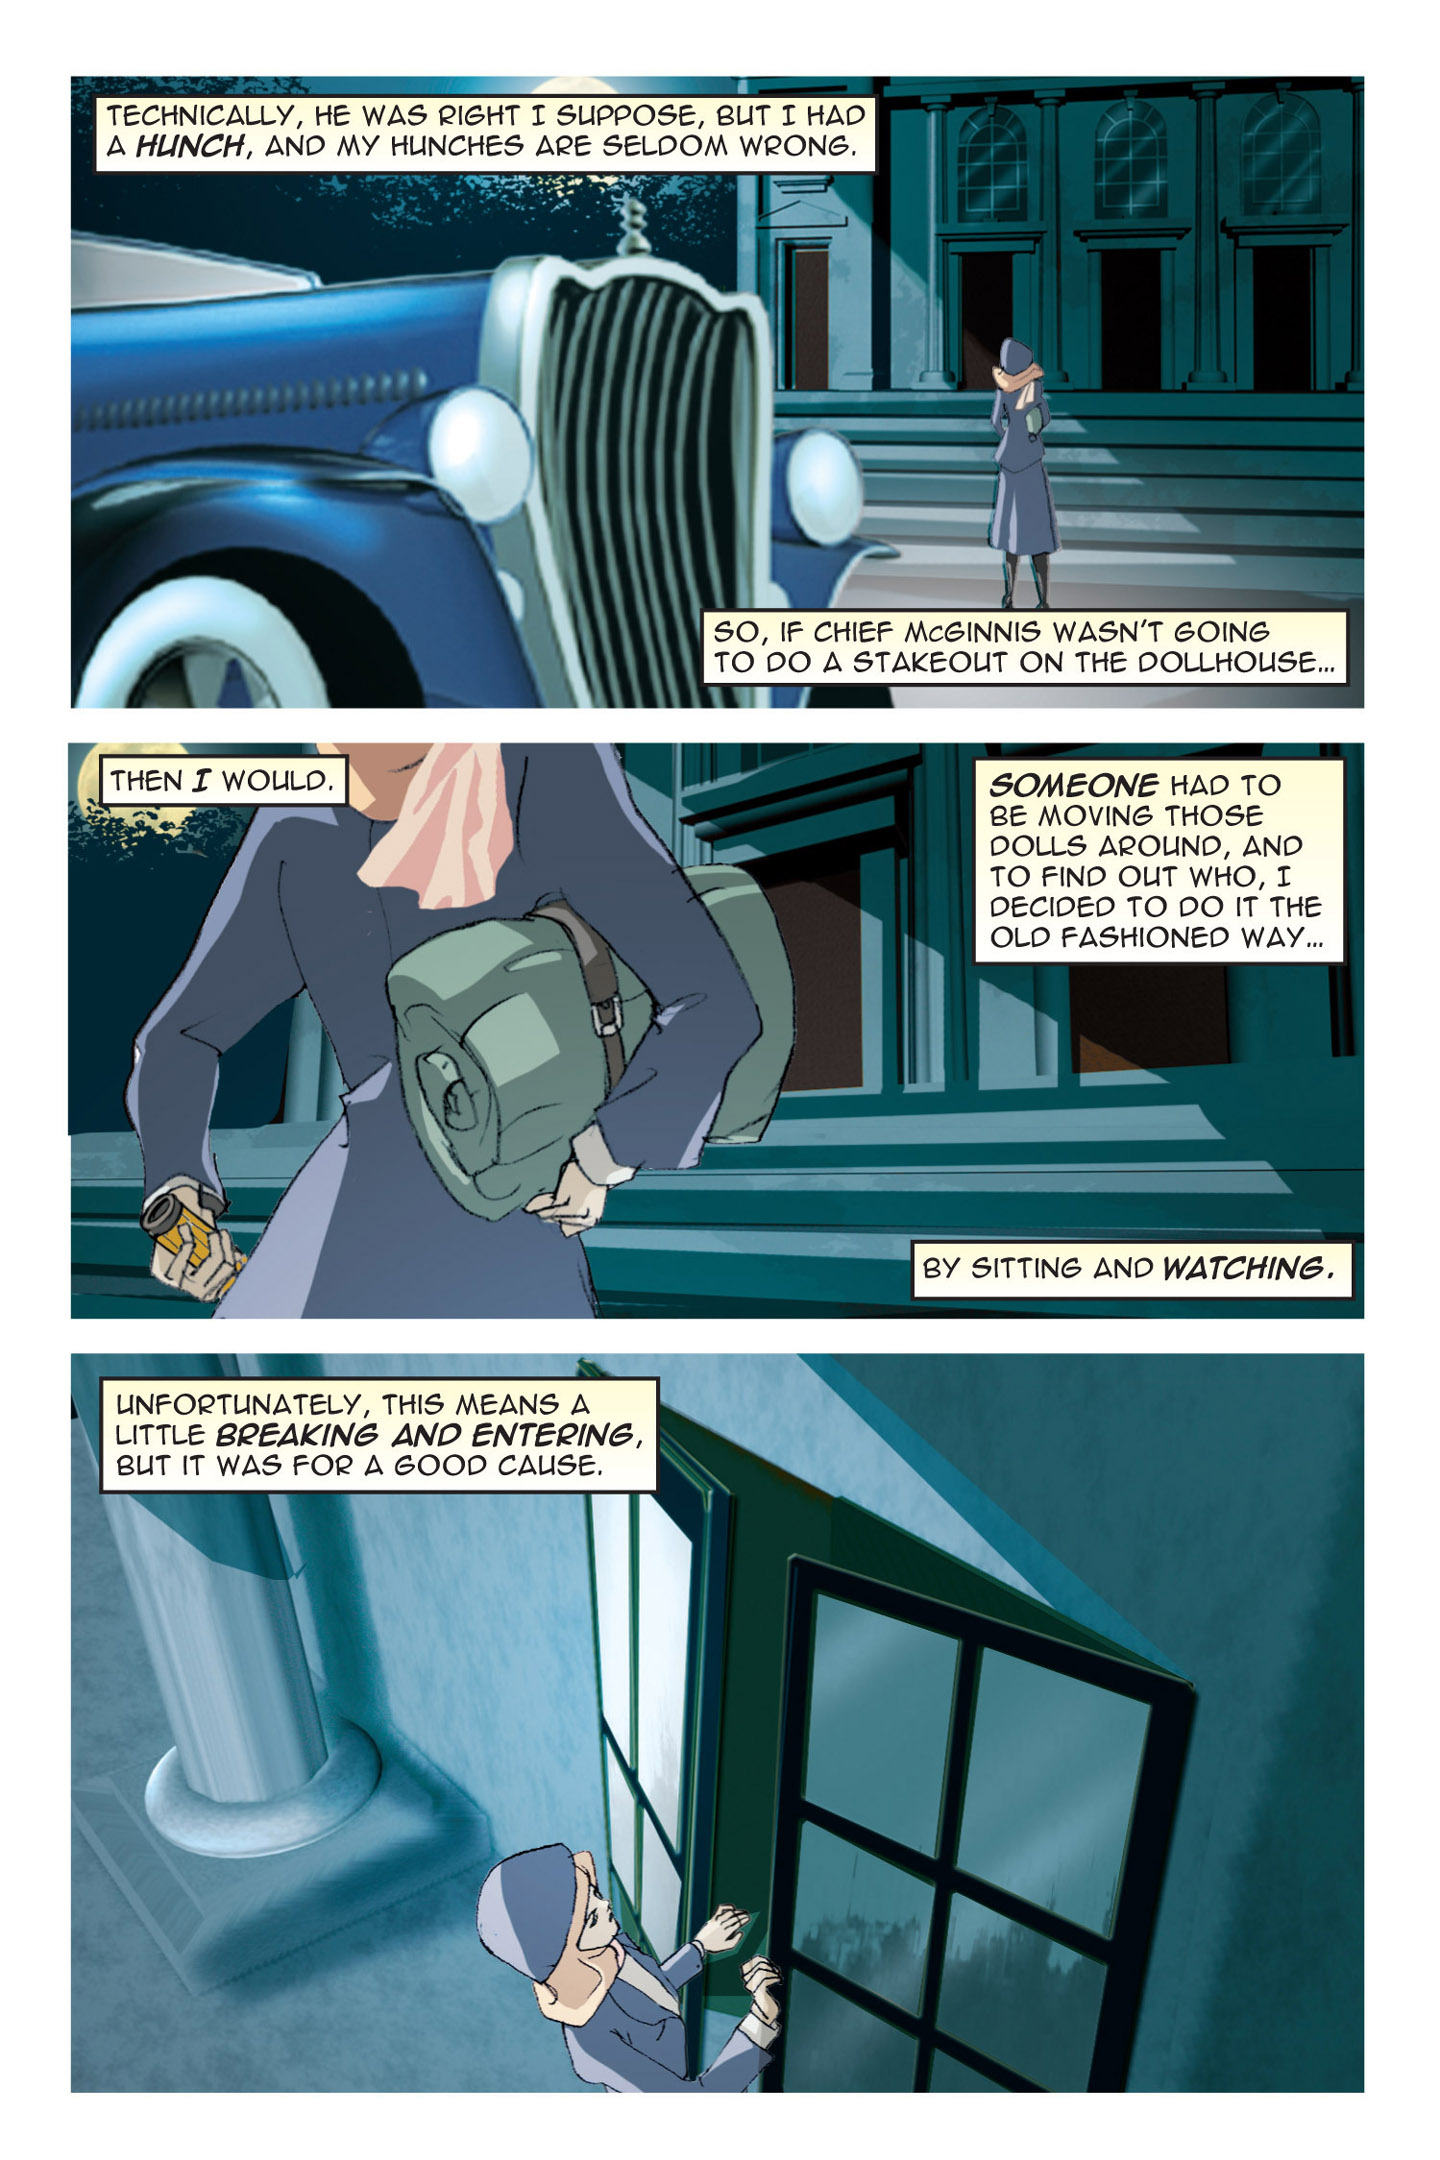 Read online Nancy Drew comic -  Issue #3 - 29